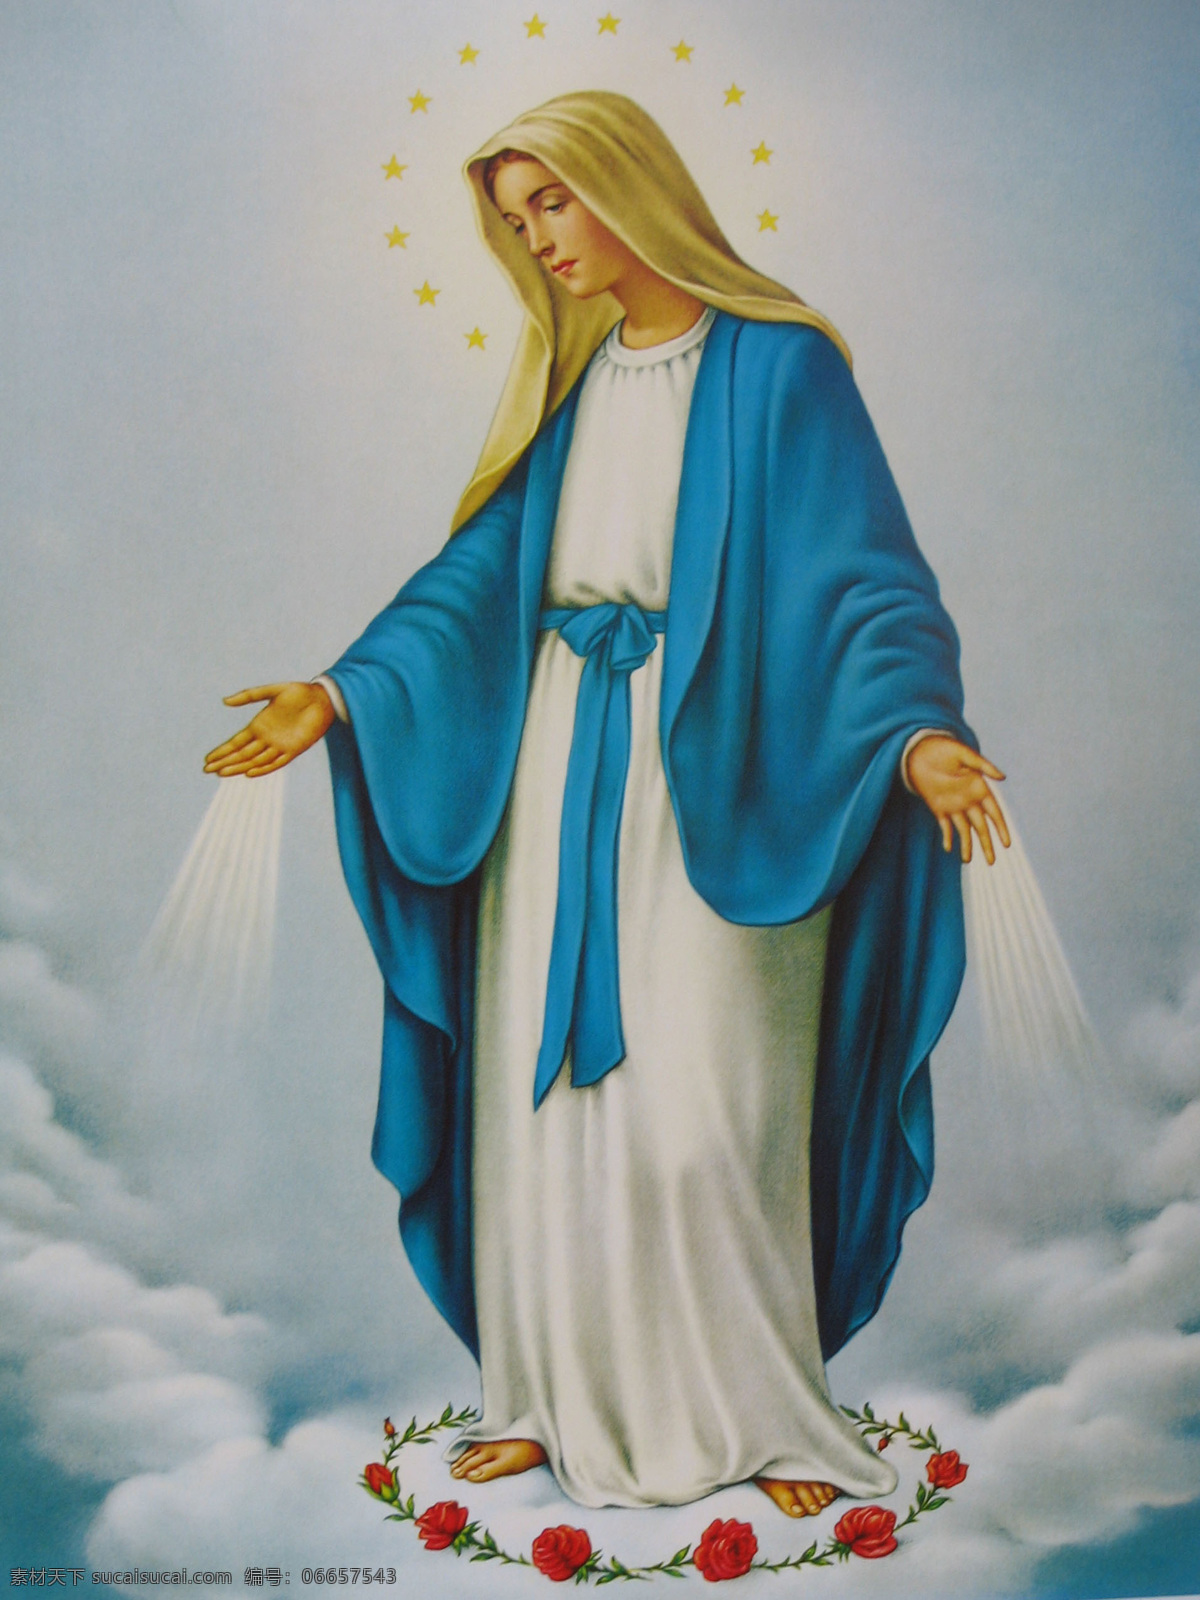 圣经 油画 玛利亚 圣经油画 圣母玛利亚 玛利亚升天图 蒙 召 升天 人物 基督教 绘画书法 文化艺术